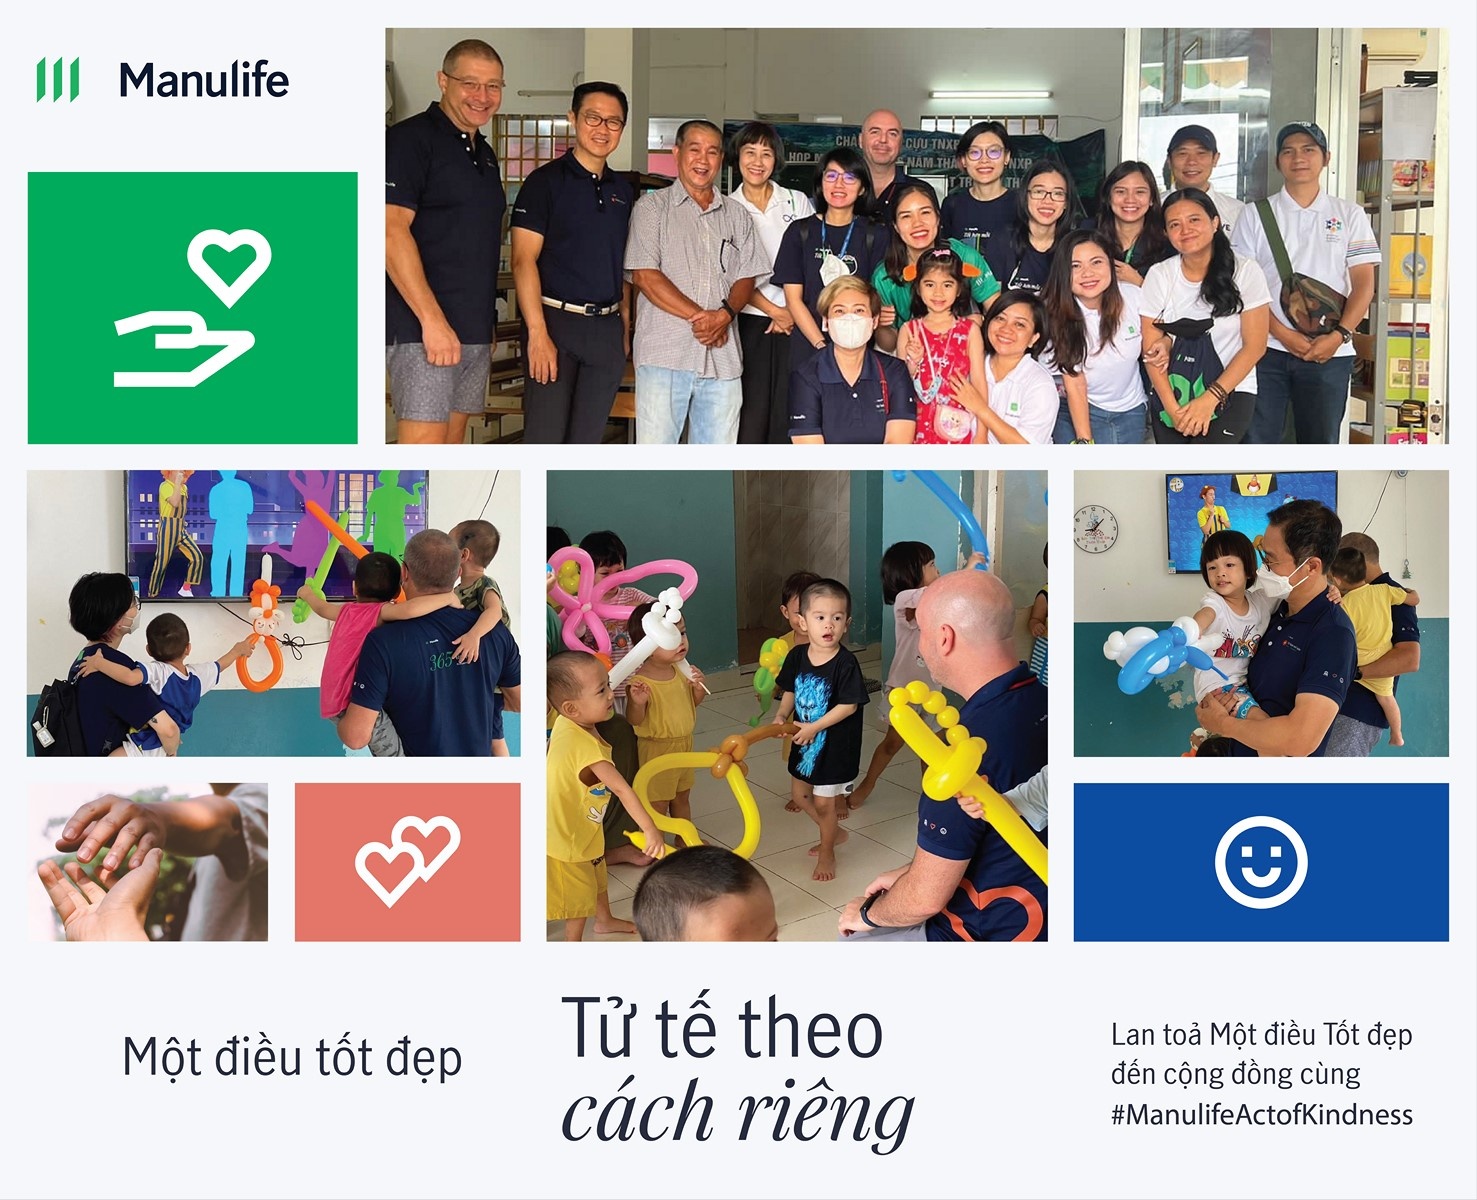 Manulife Việt Nam triển khai chiến dịch "Một điều tốt đẹp"